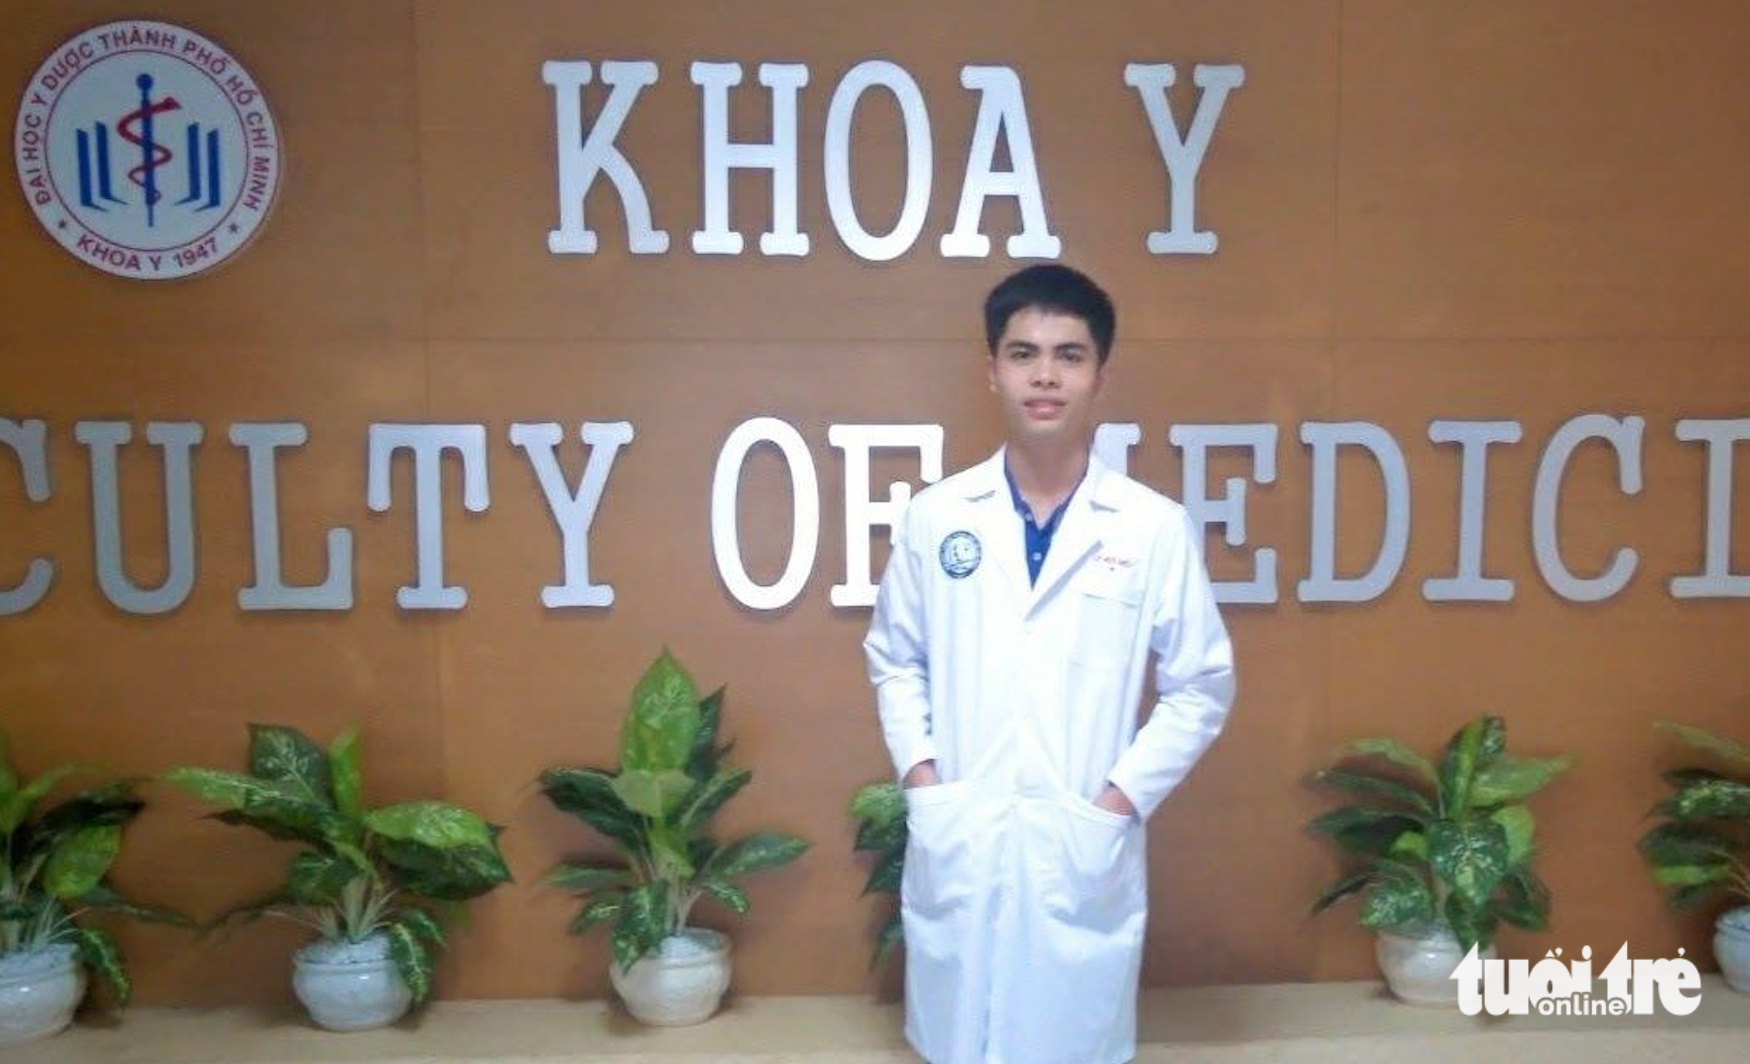 Bạn Lê Hữu Hiếu nhận học bổng Tiếp sức đến trường năm 2017 sắp trở thành một bác sĩ - Ảnh: Nhân vật cung cấp